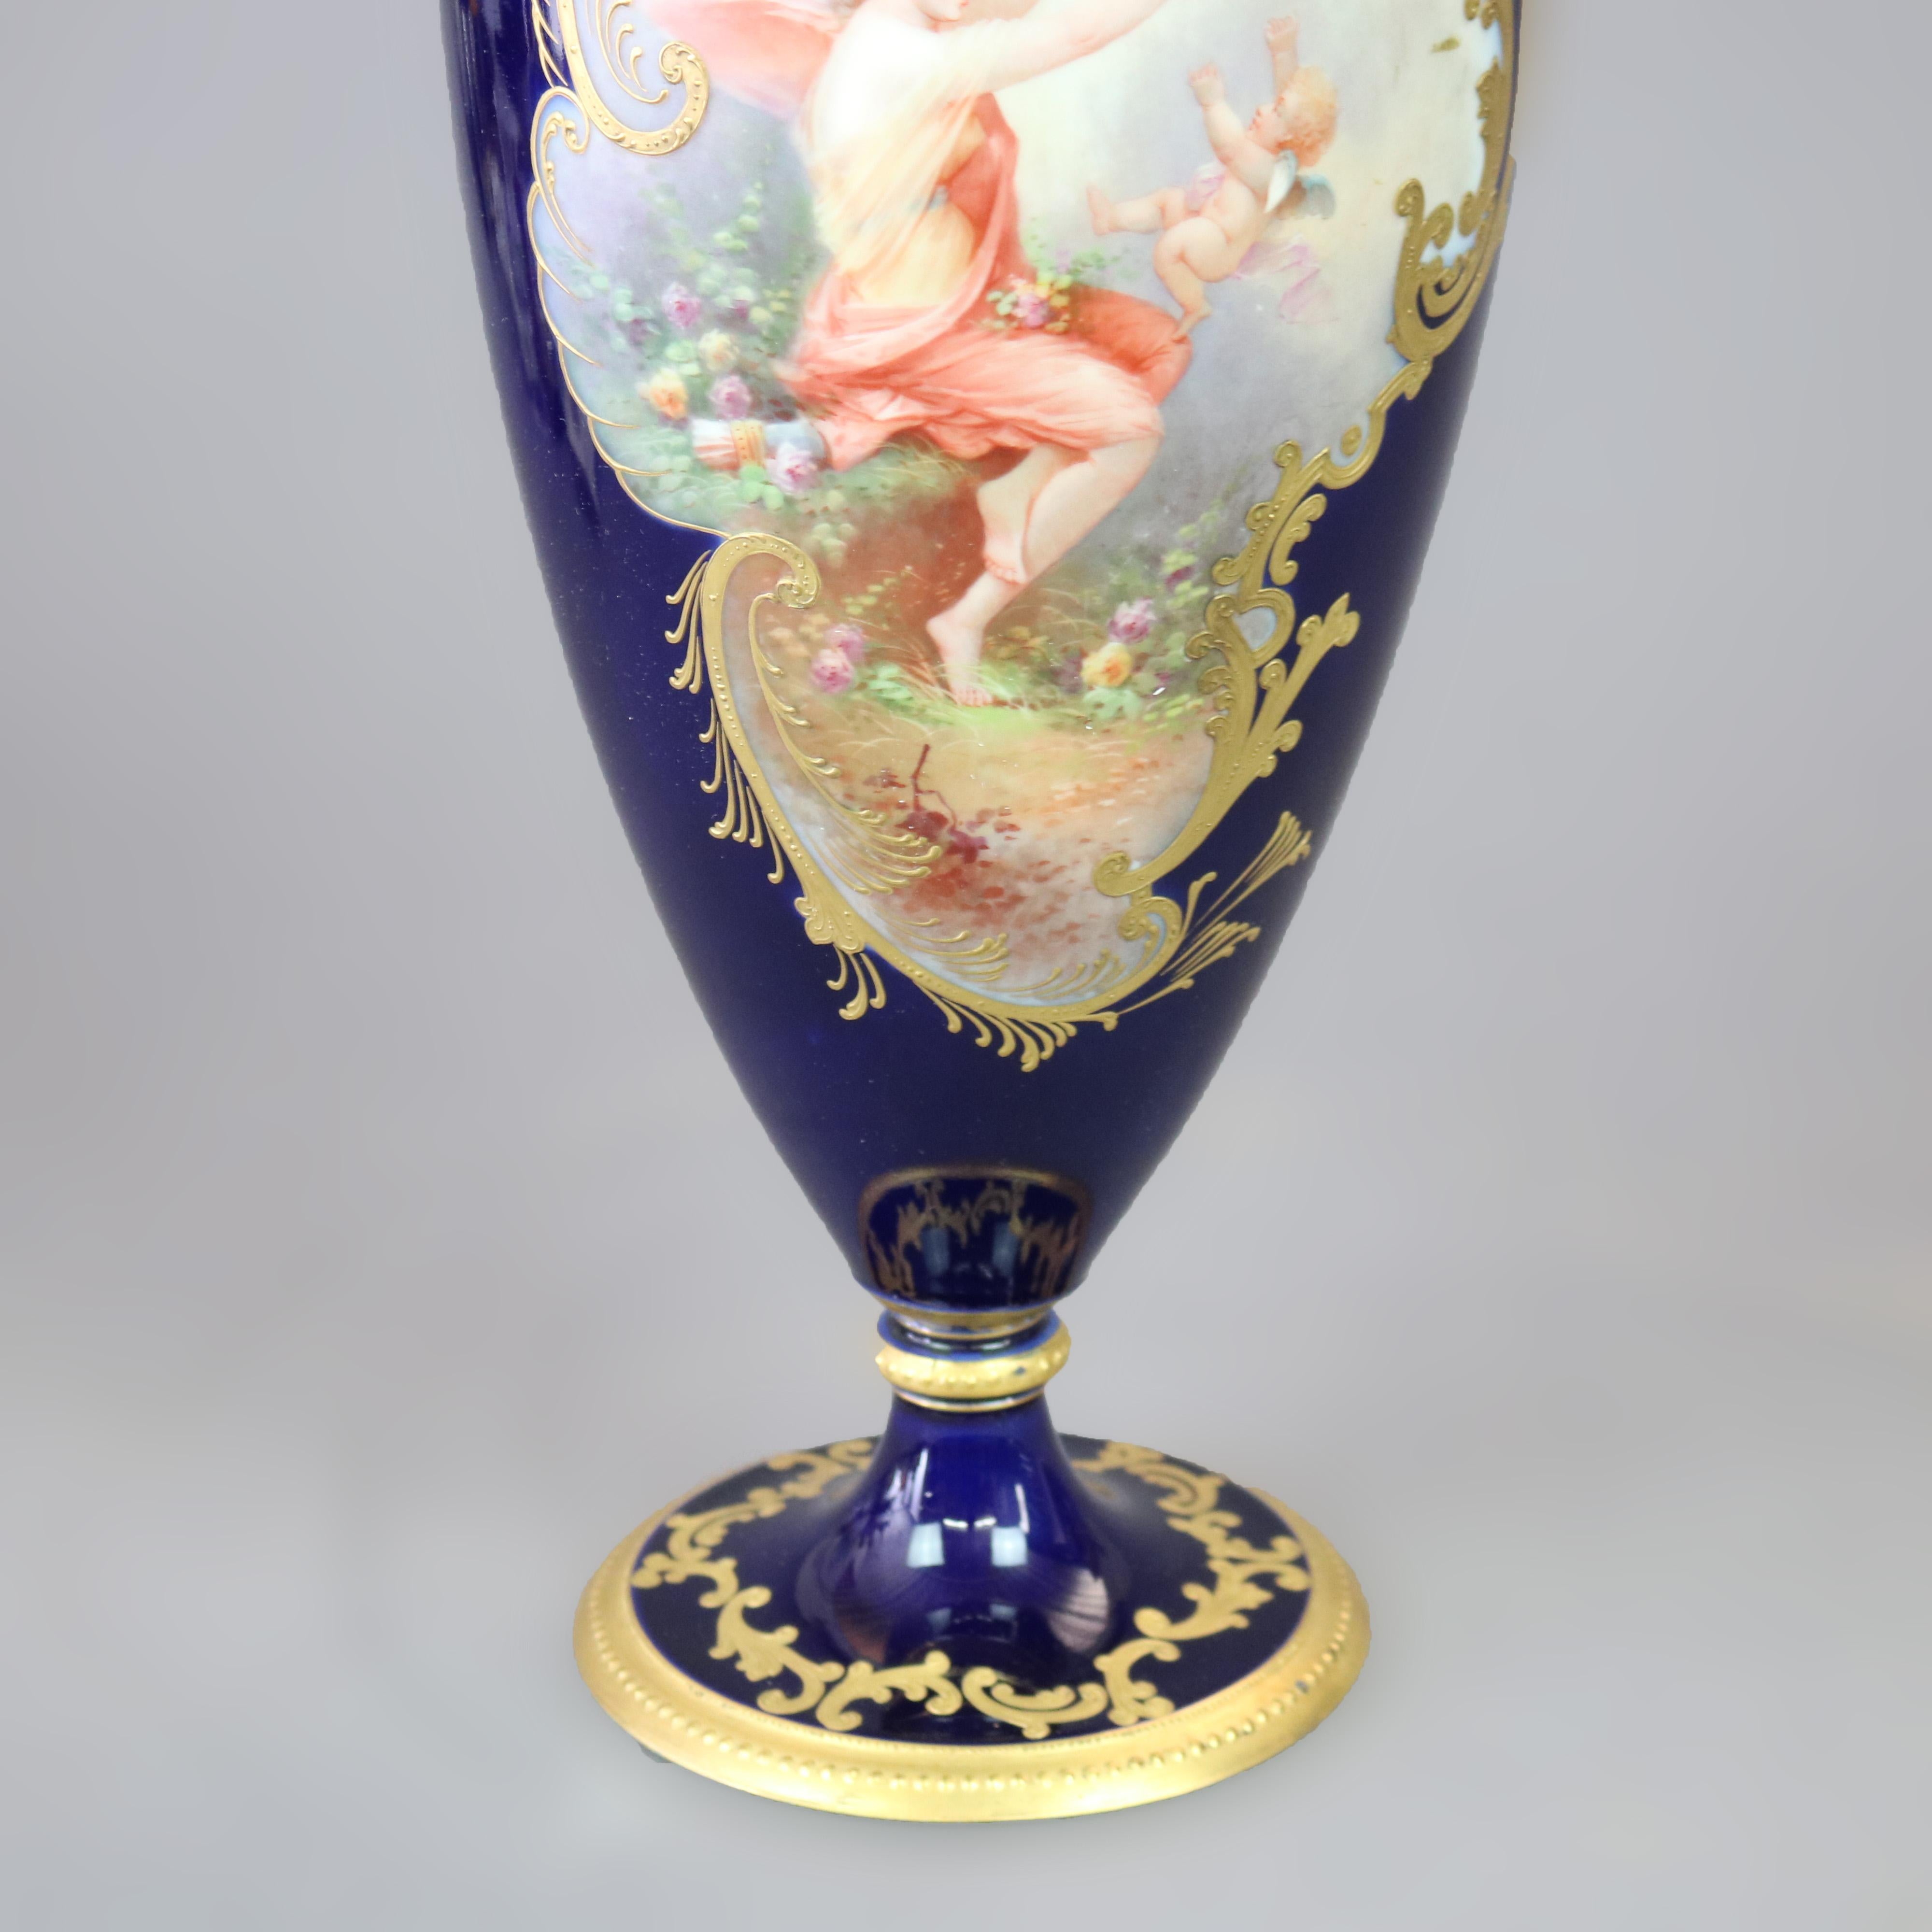 Oversized Antique Limoges Porcelain Hand Painted Allegorical Portrait Urn c1900 For Sale 8